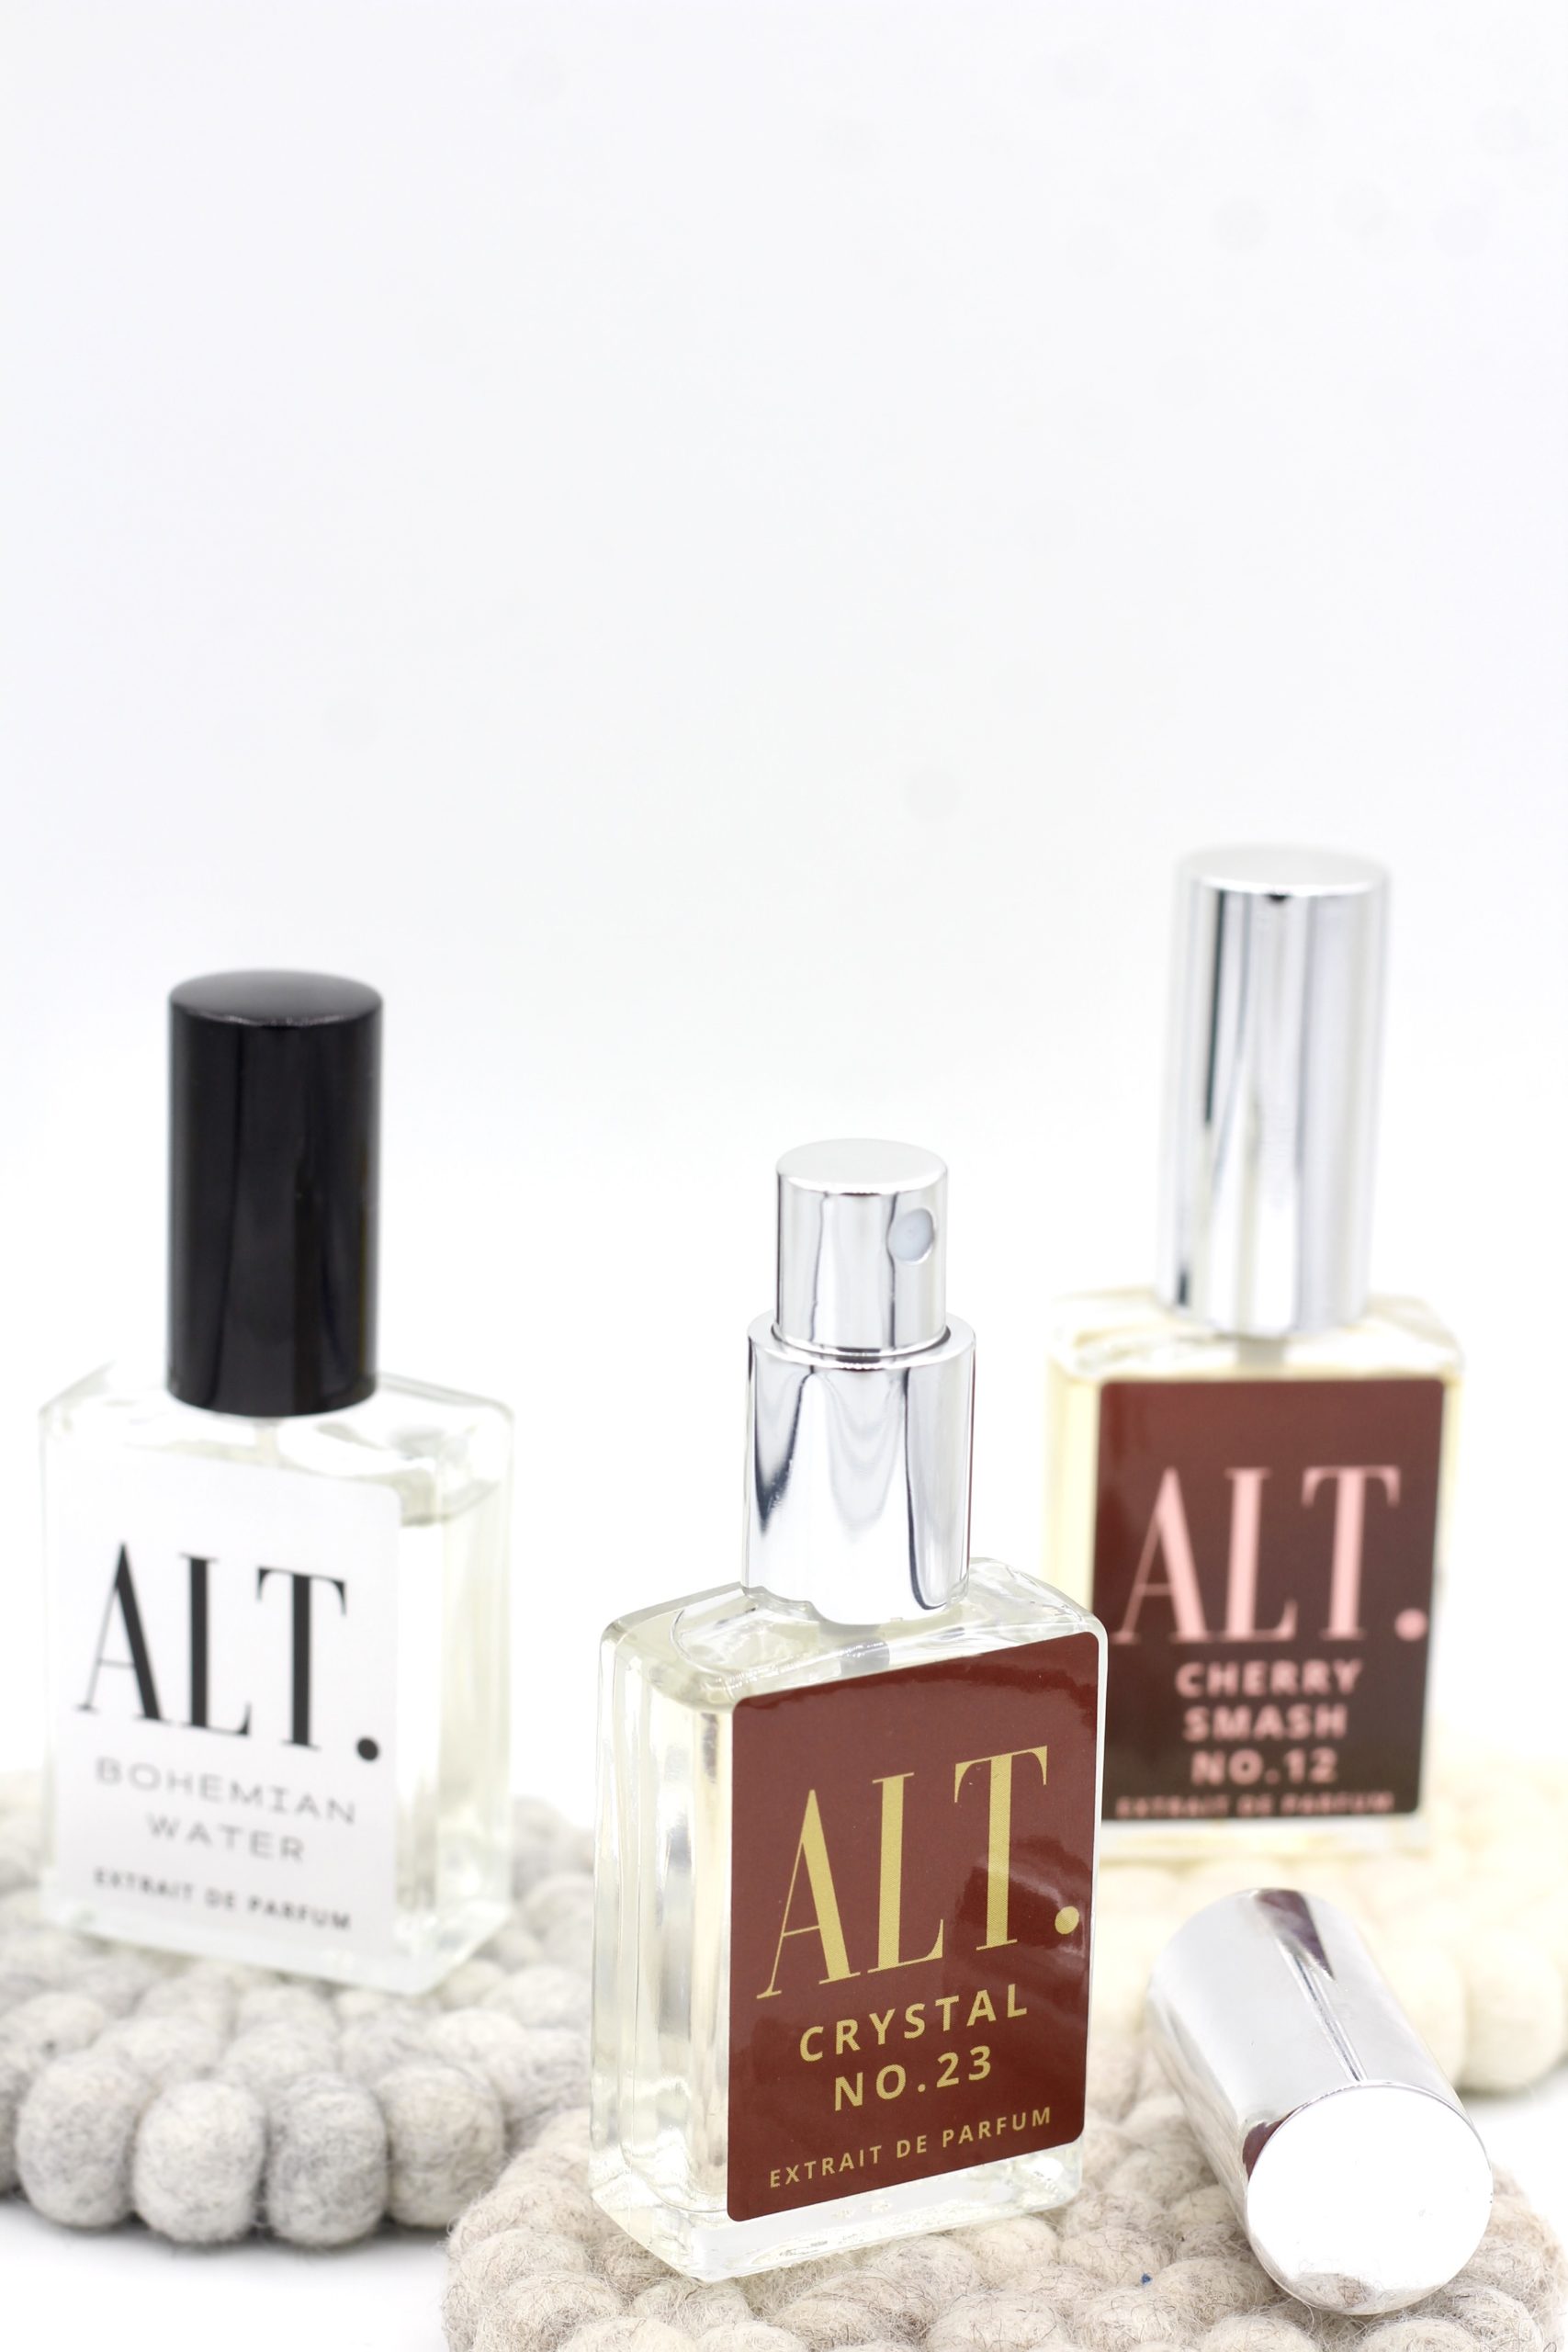 ALT. Fragrances: The Best Fragrance Dupes – When I'm Older